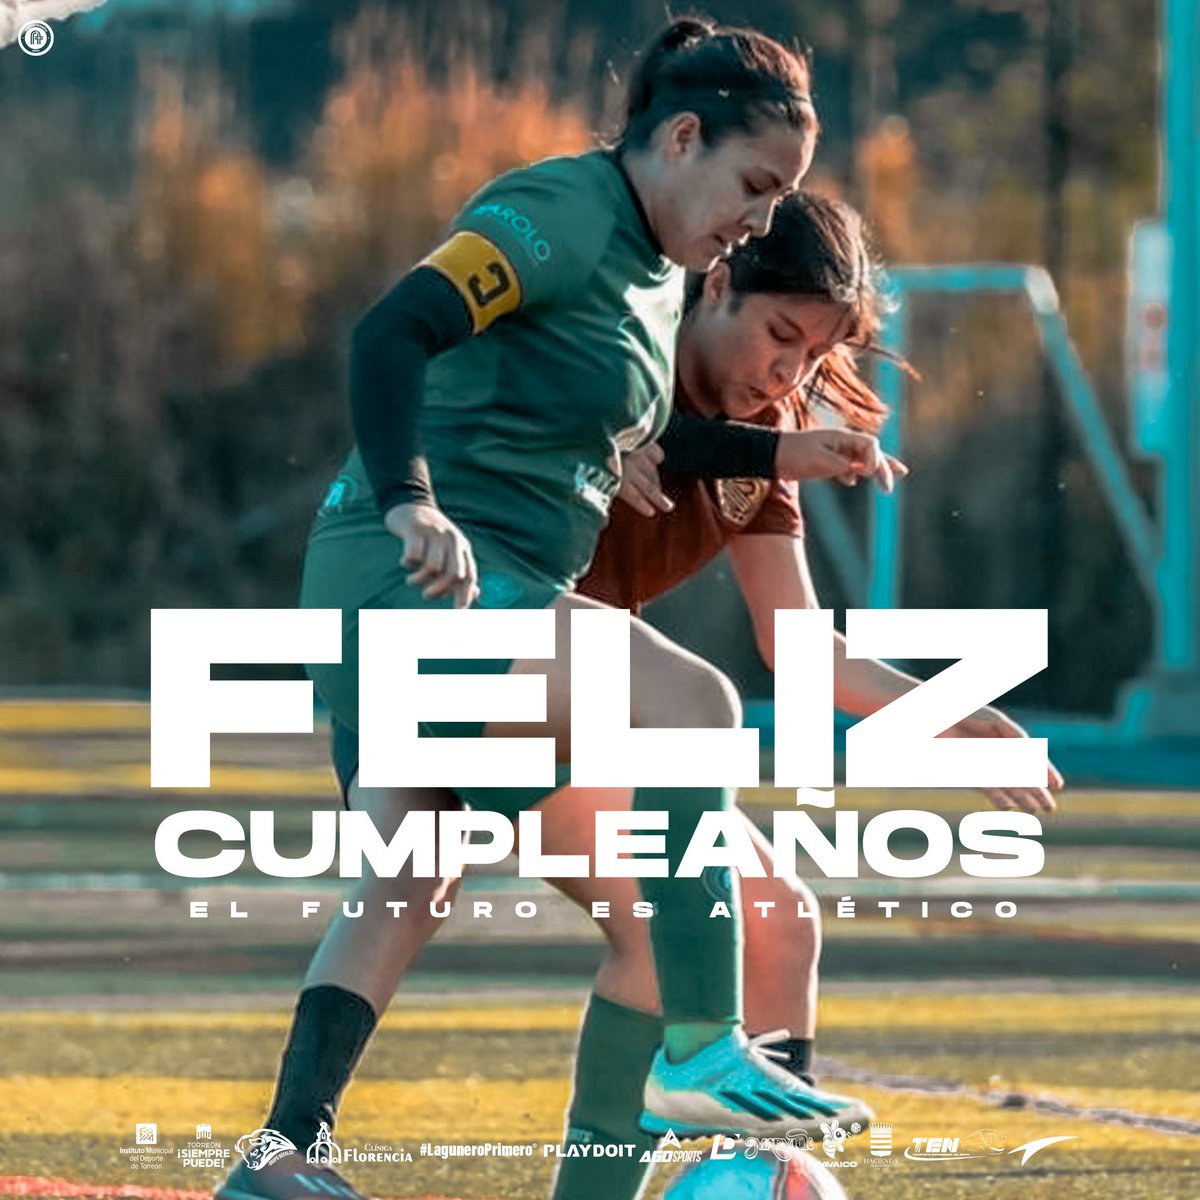 🎉 | Enviamos un abrazo y felicitación a nuestra jugadora Araely Cardiel, de nuestro primer equipo femenil, que el día de hoy está festejando su cumpleaños. 

⚪️🟢 | #NacimosParaSuperarloTodo #ElFuturoEsAtletico  #LaguneroPrimero